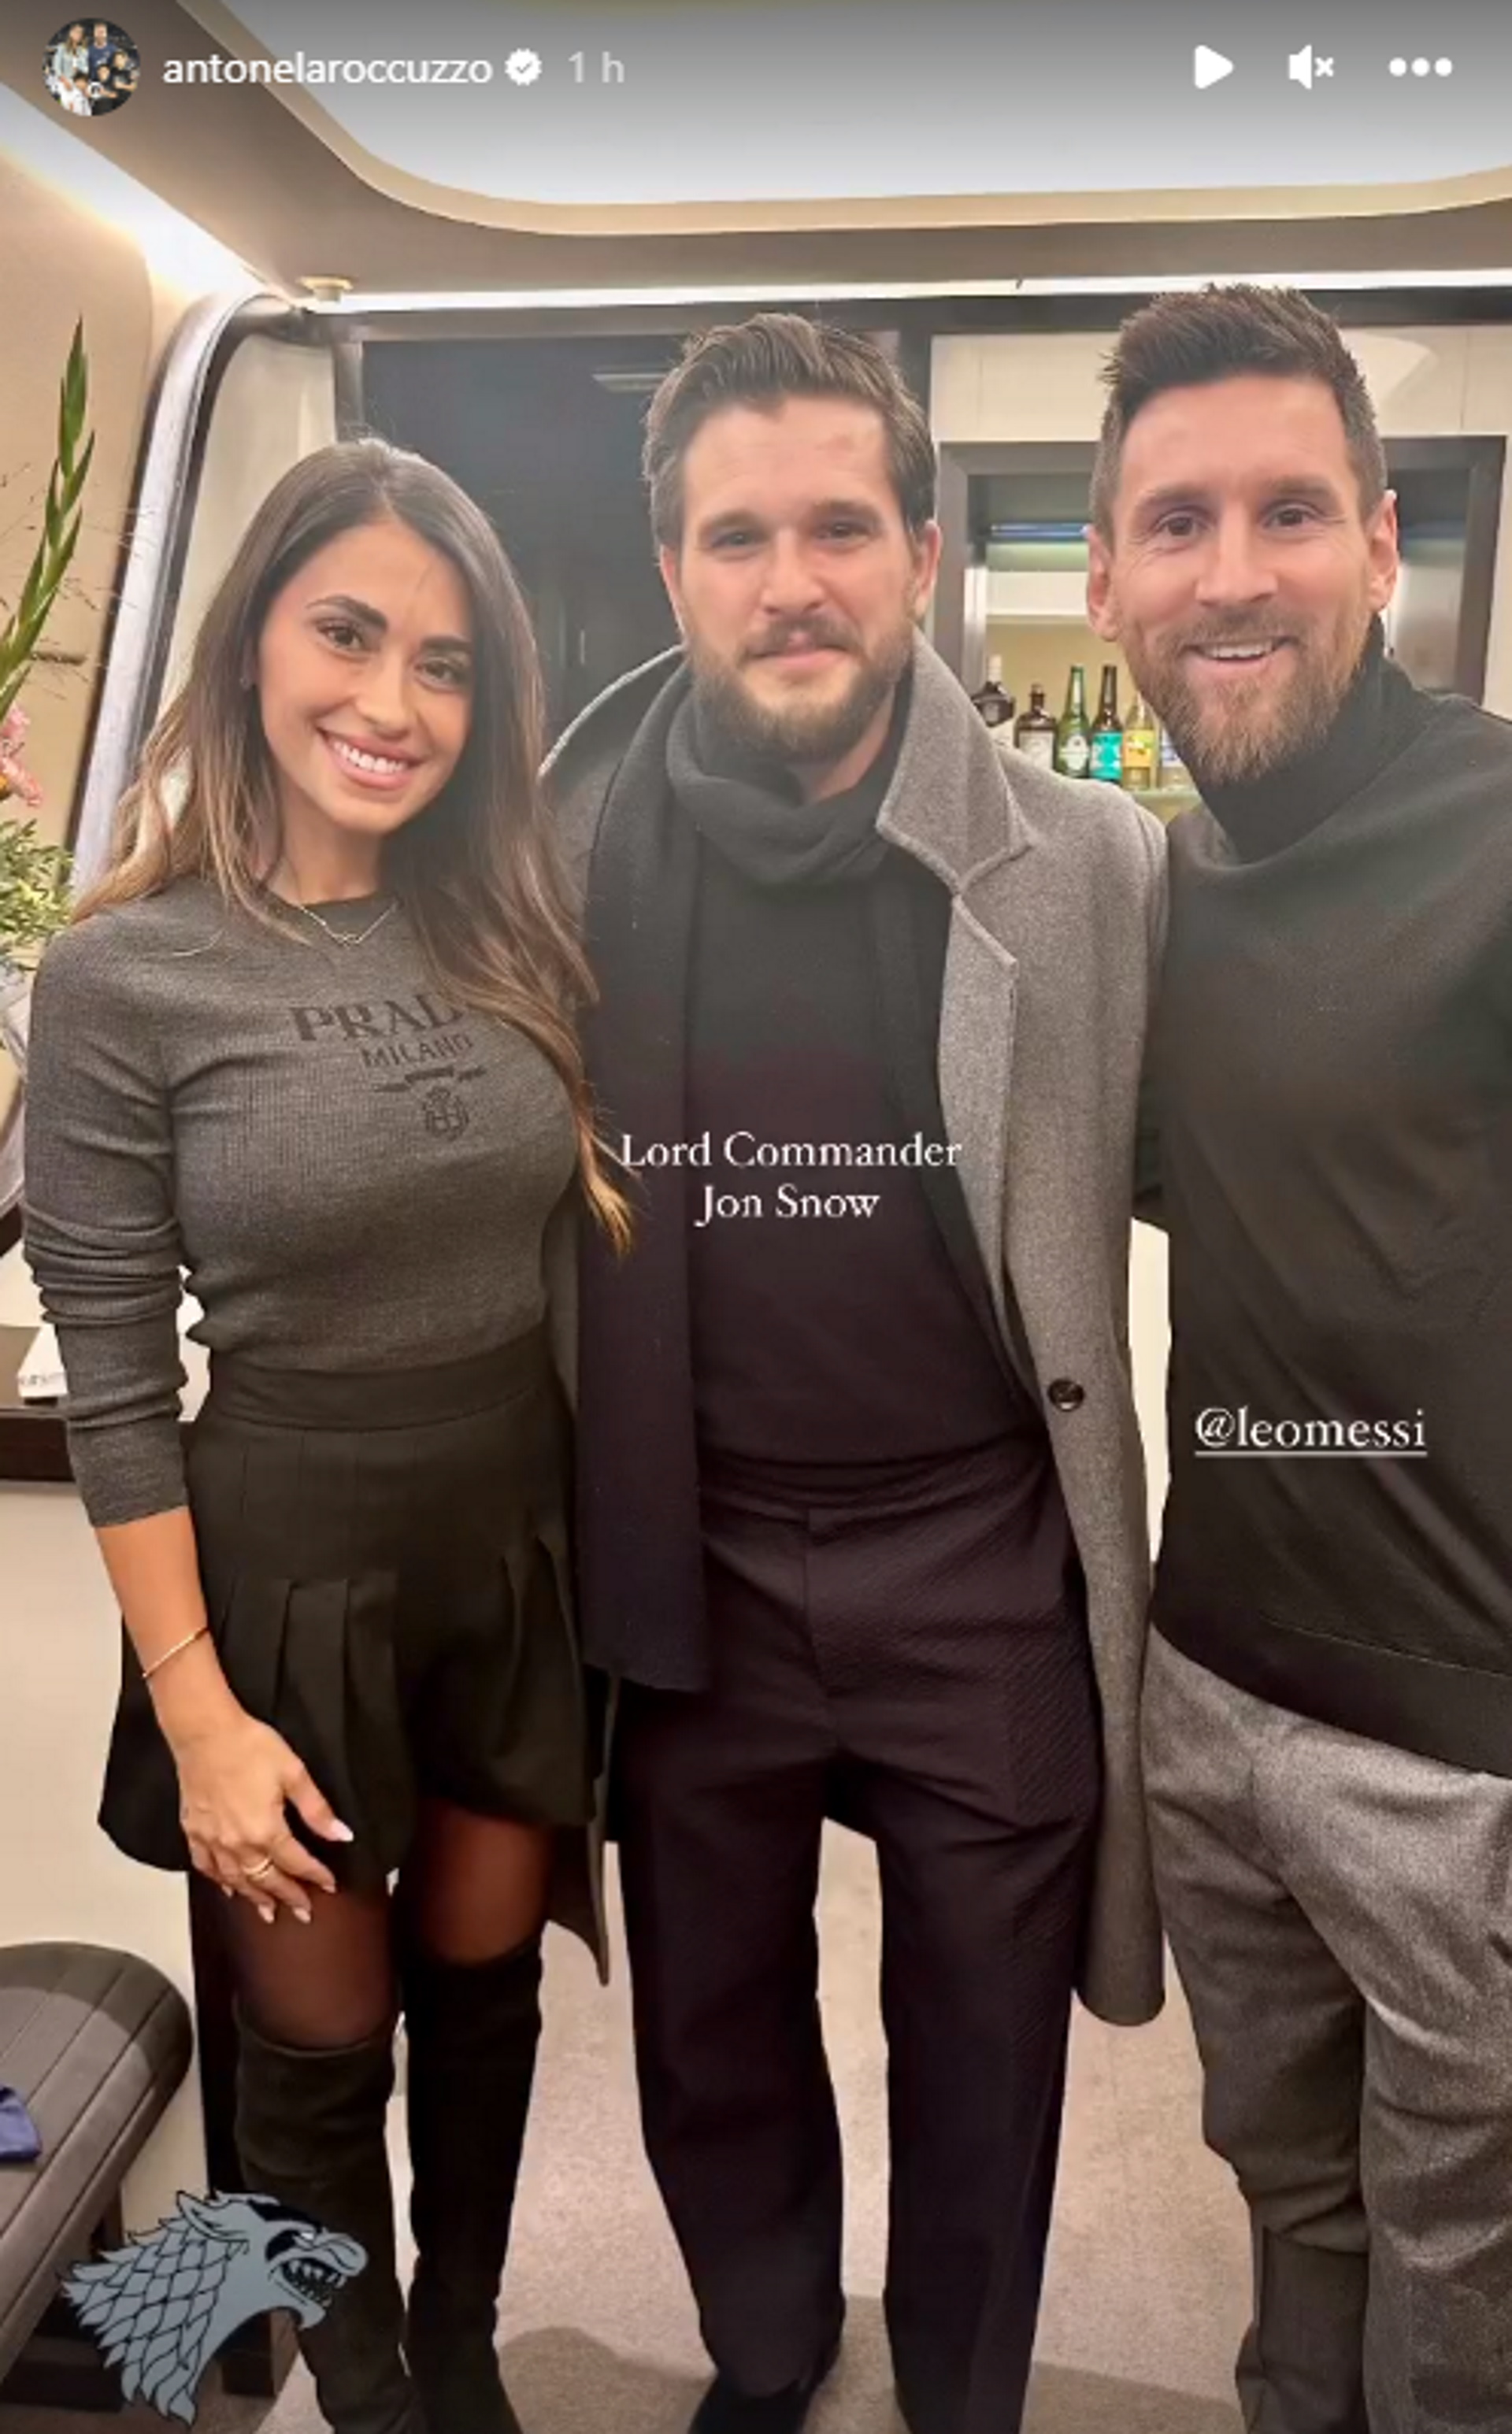 Furor la foto de Antonela Roccuzzo y Lionel Messi junto a “Jon Snow”, personaje de Game Of Thrones: los mejores memes y reacciones - Infobae